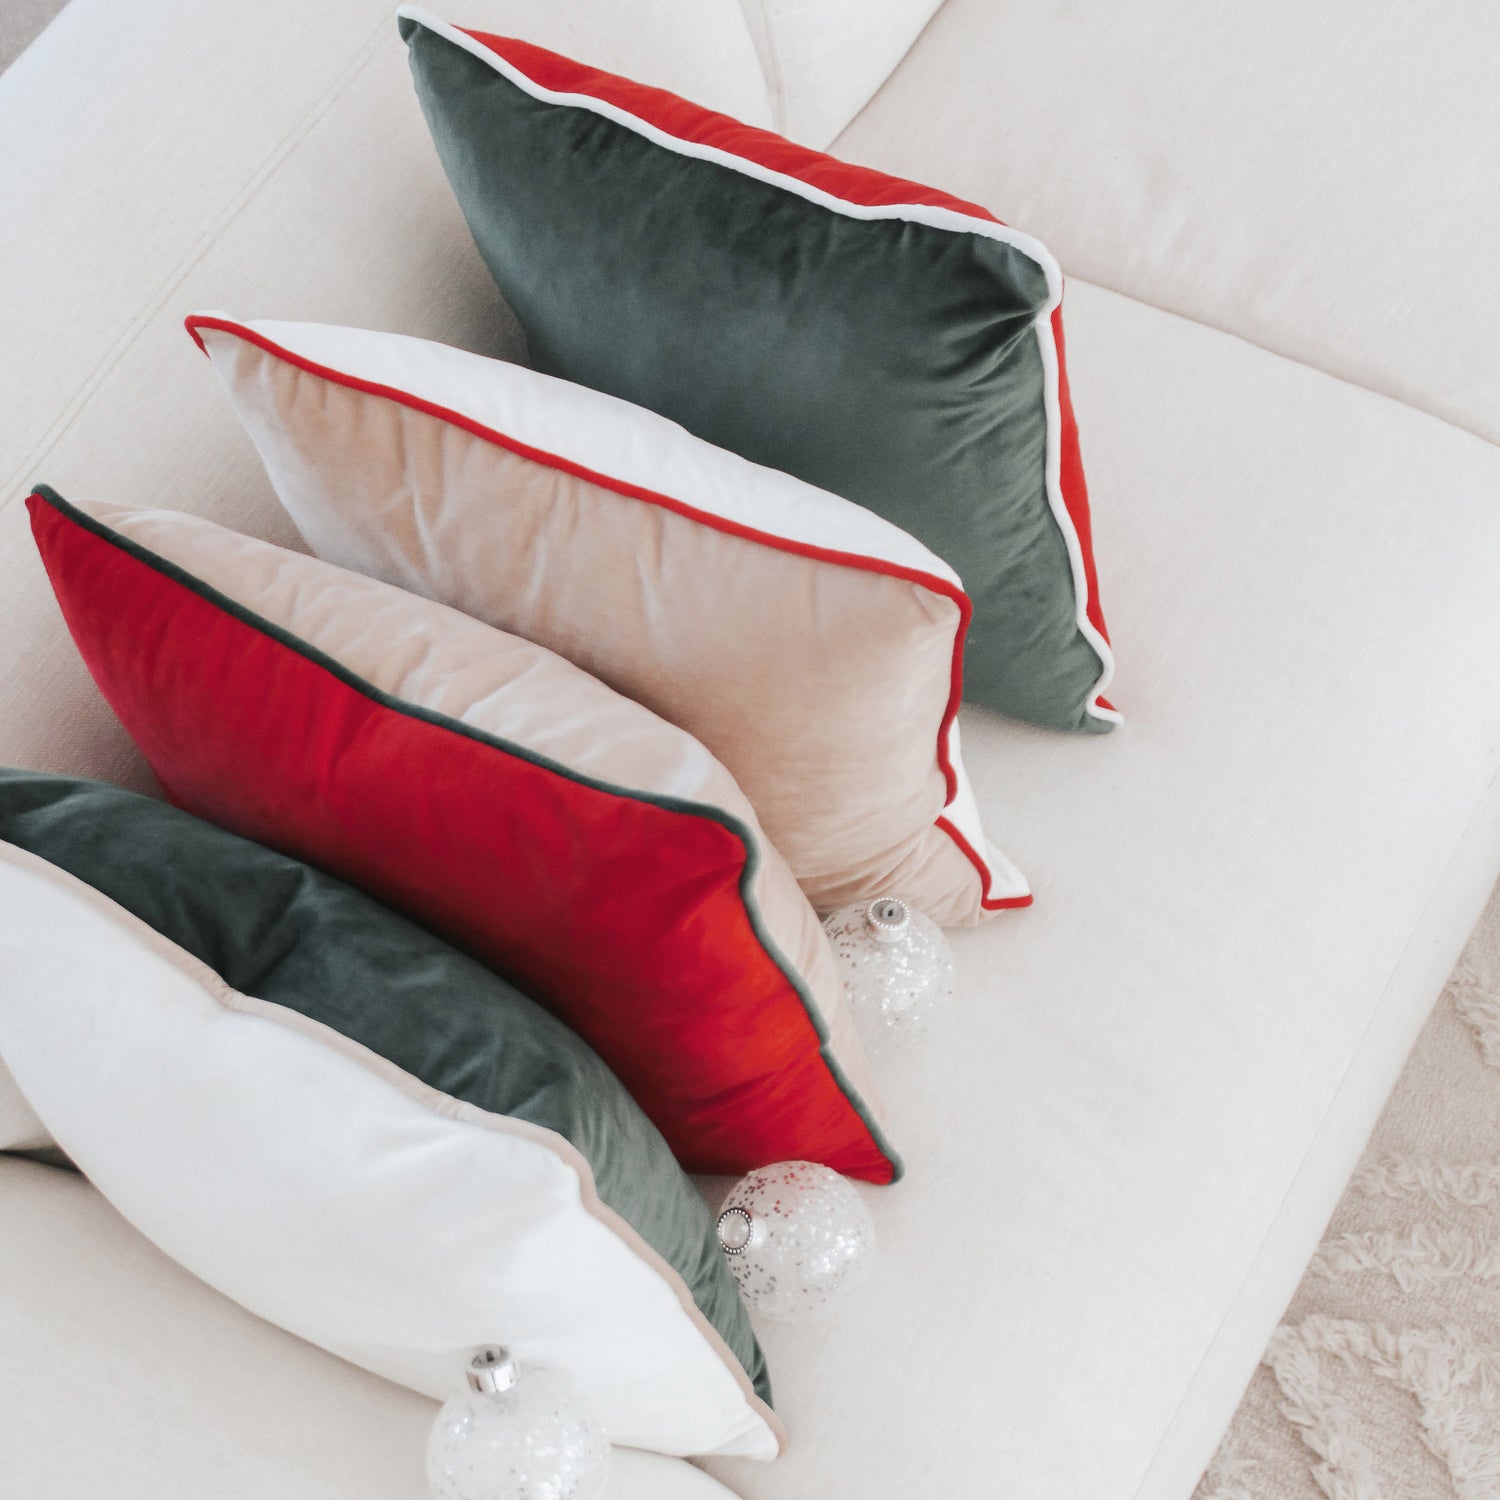 Monteverde Pillows (4-Pack) - Orange/Green